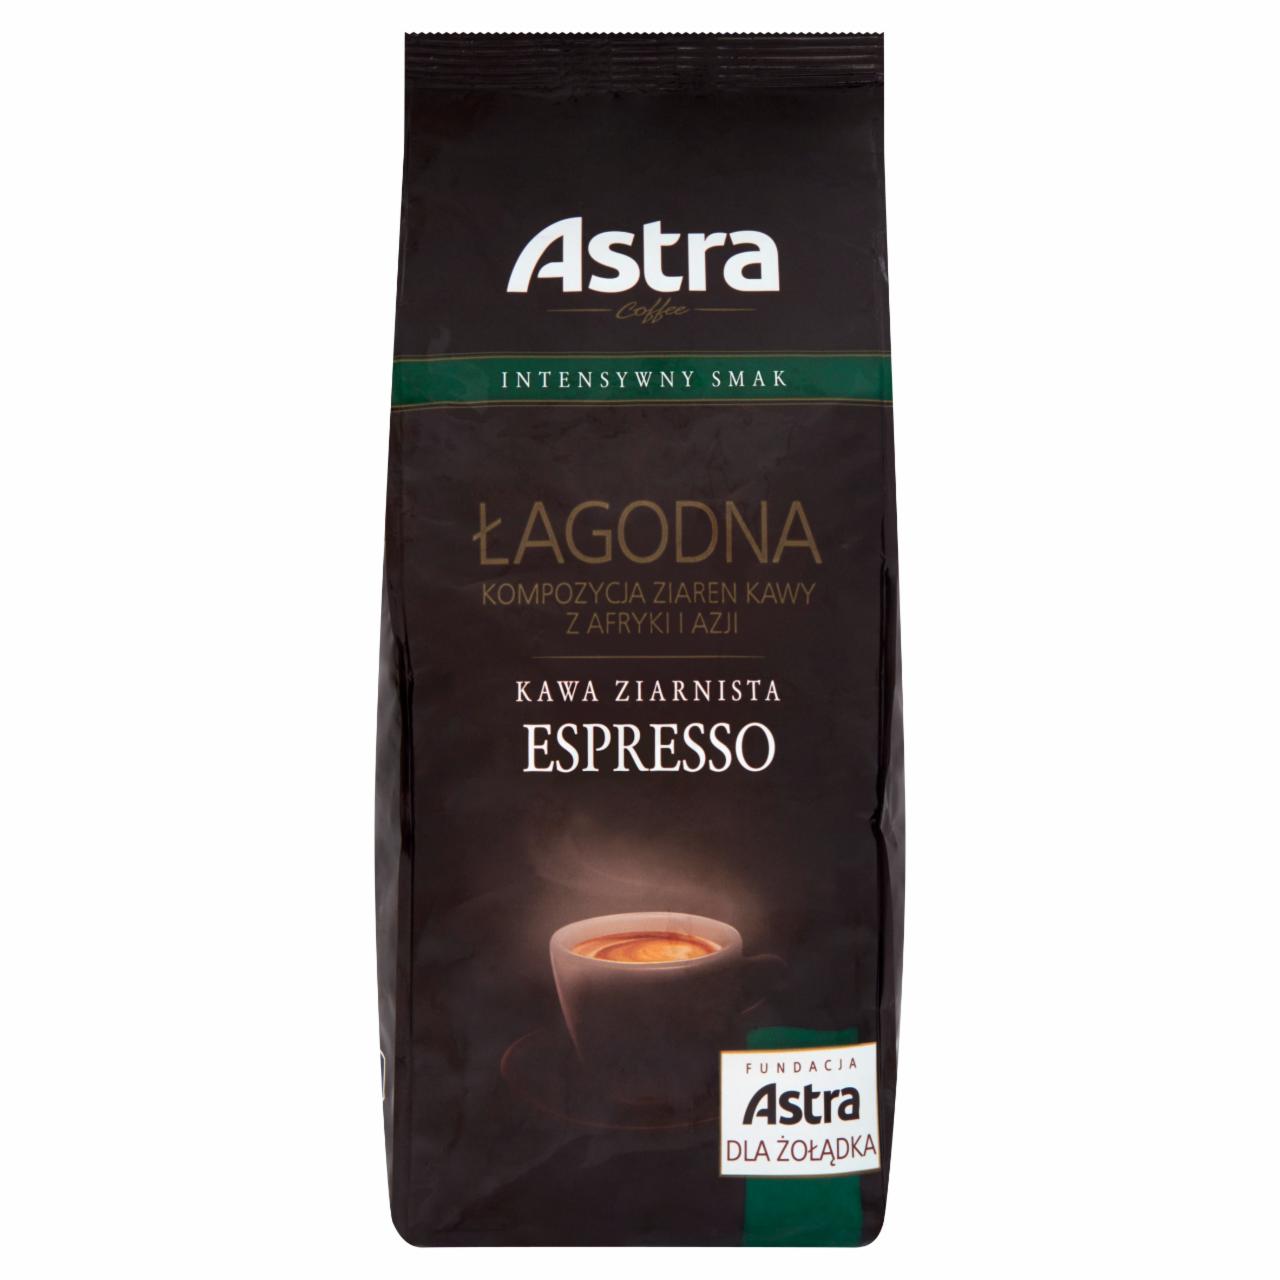 Zdjęcia - Astra Łagodna Intensywny smak Espresso Kawa ziarnista 1 kg